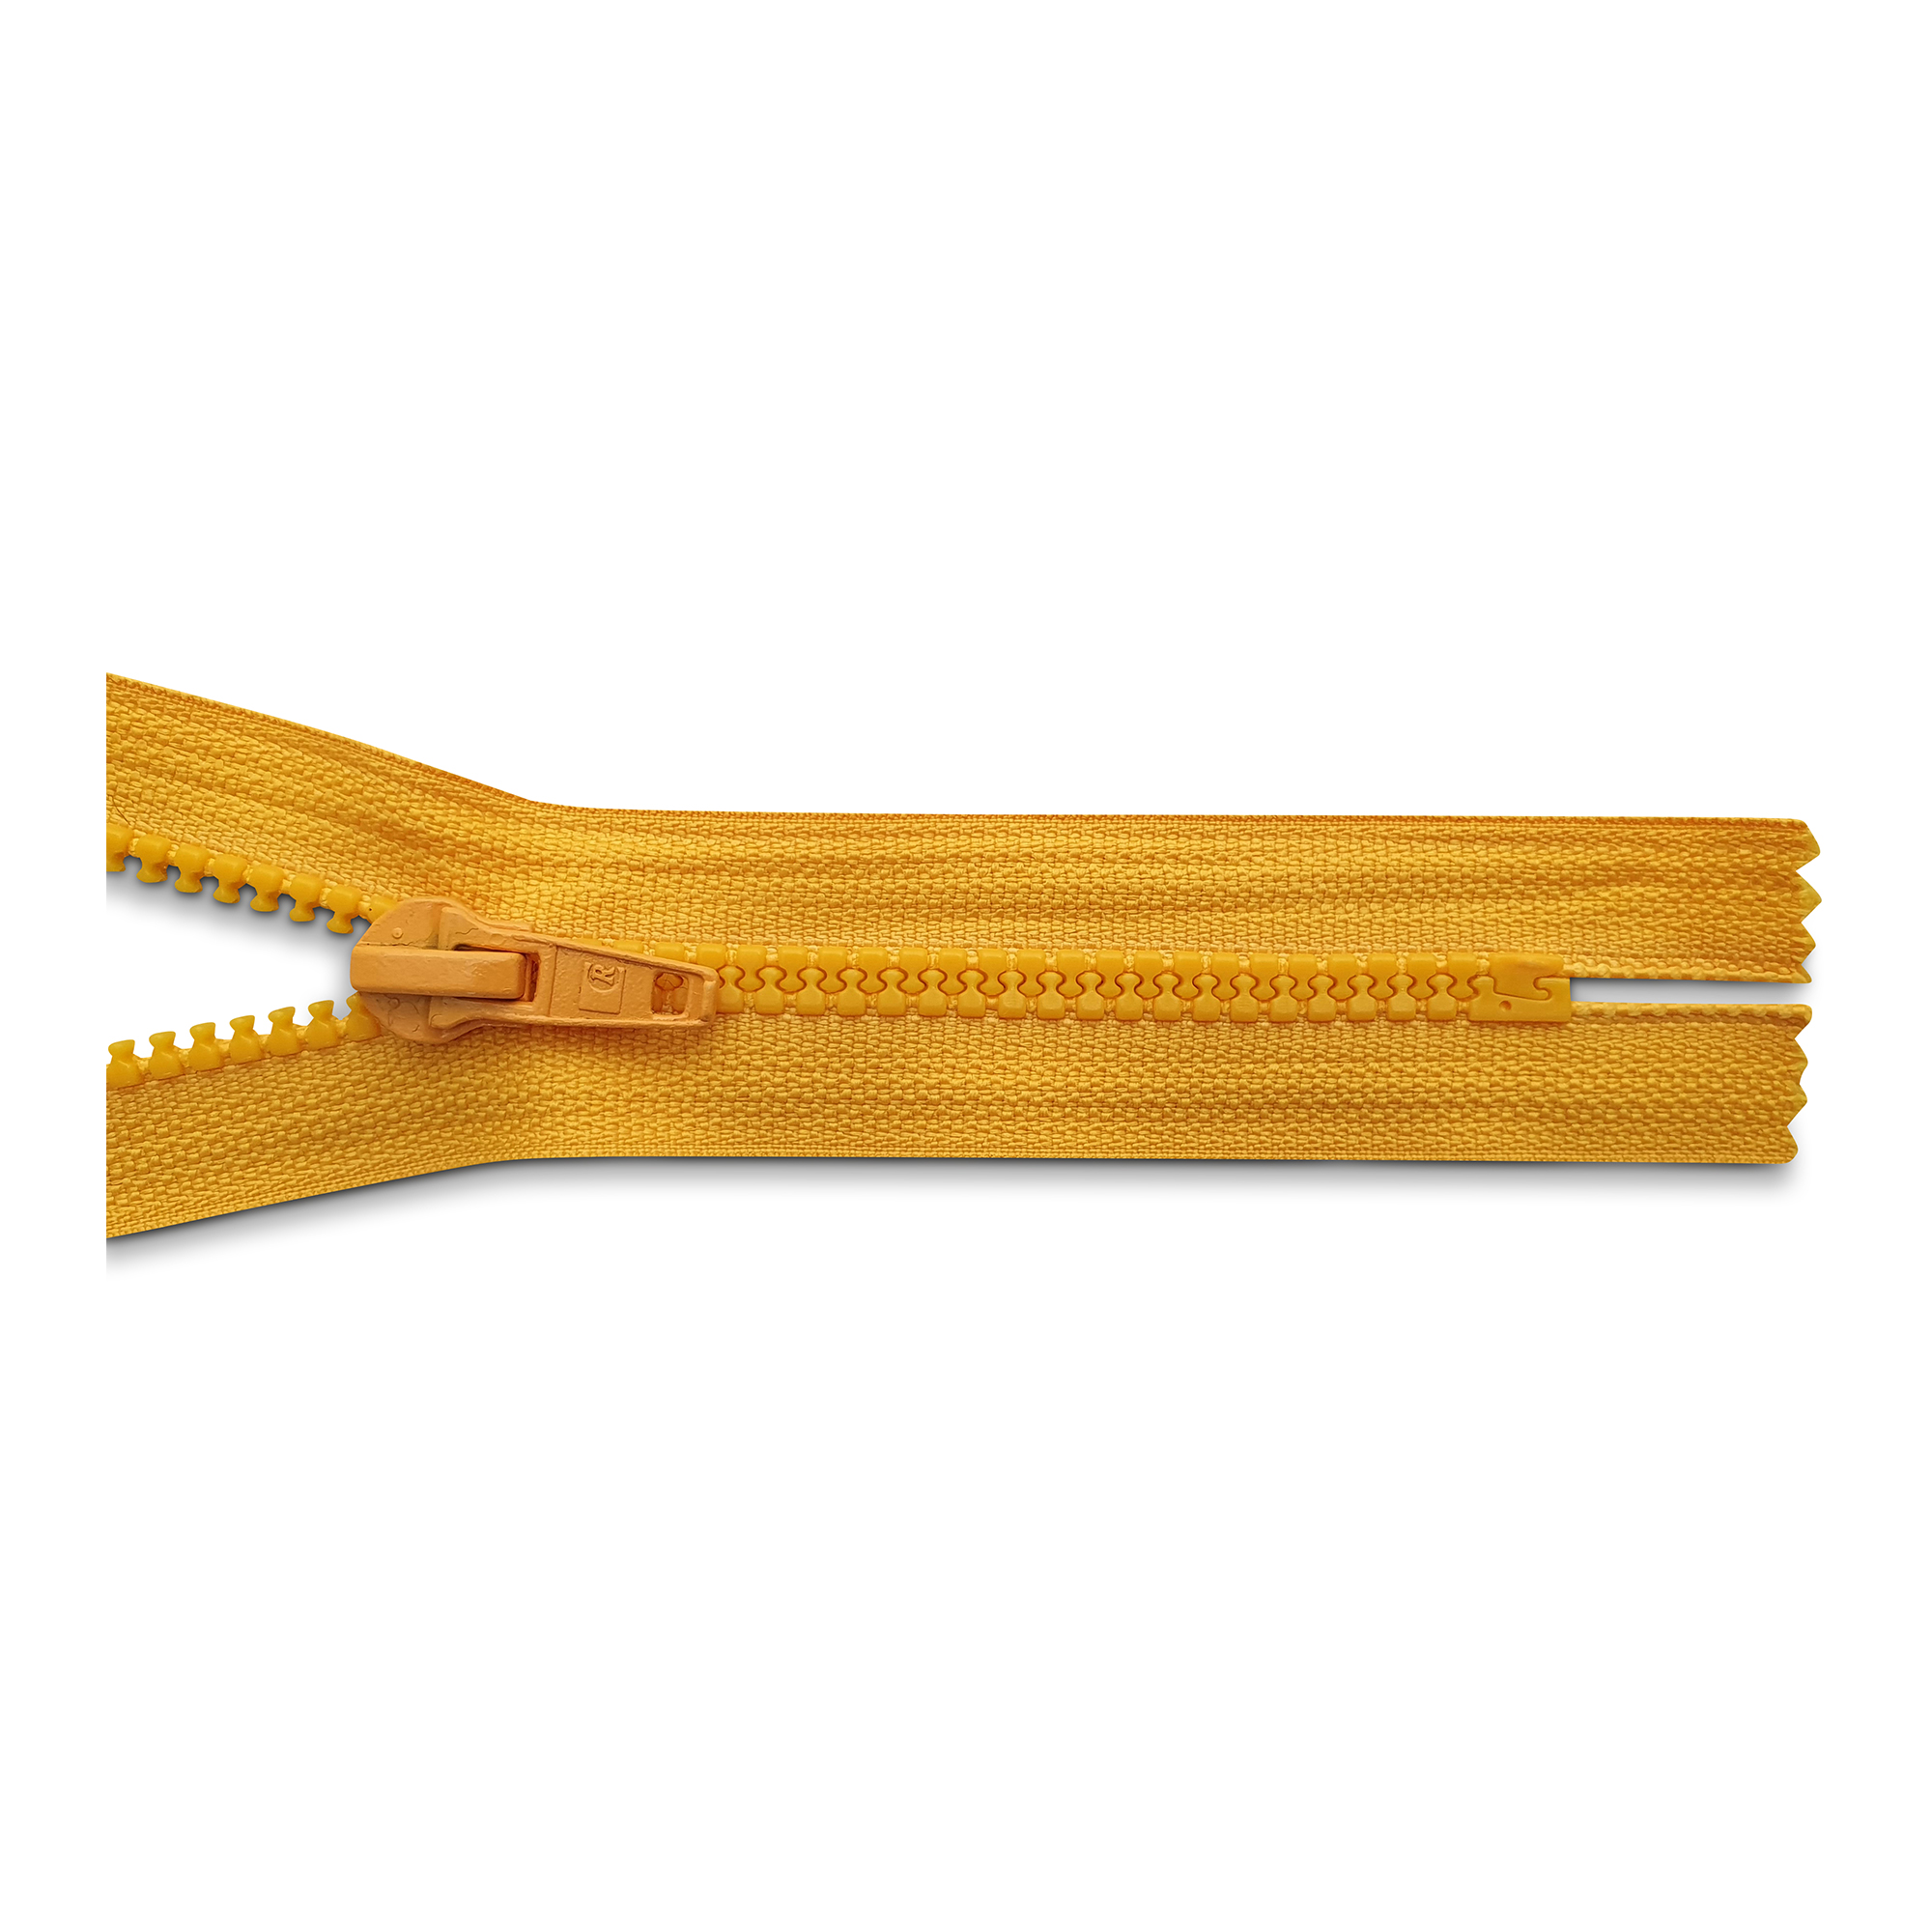 Reißverschluss 16cm, nicht teilbar, K.stoff Zähne breit, goldgelb, hochwertiger Marken-Reißverschluss von Rubi/Barcelona